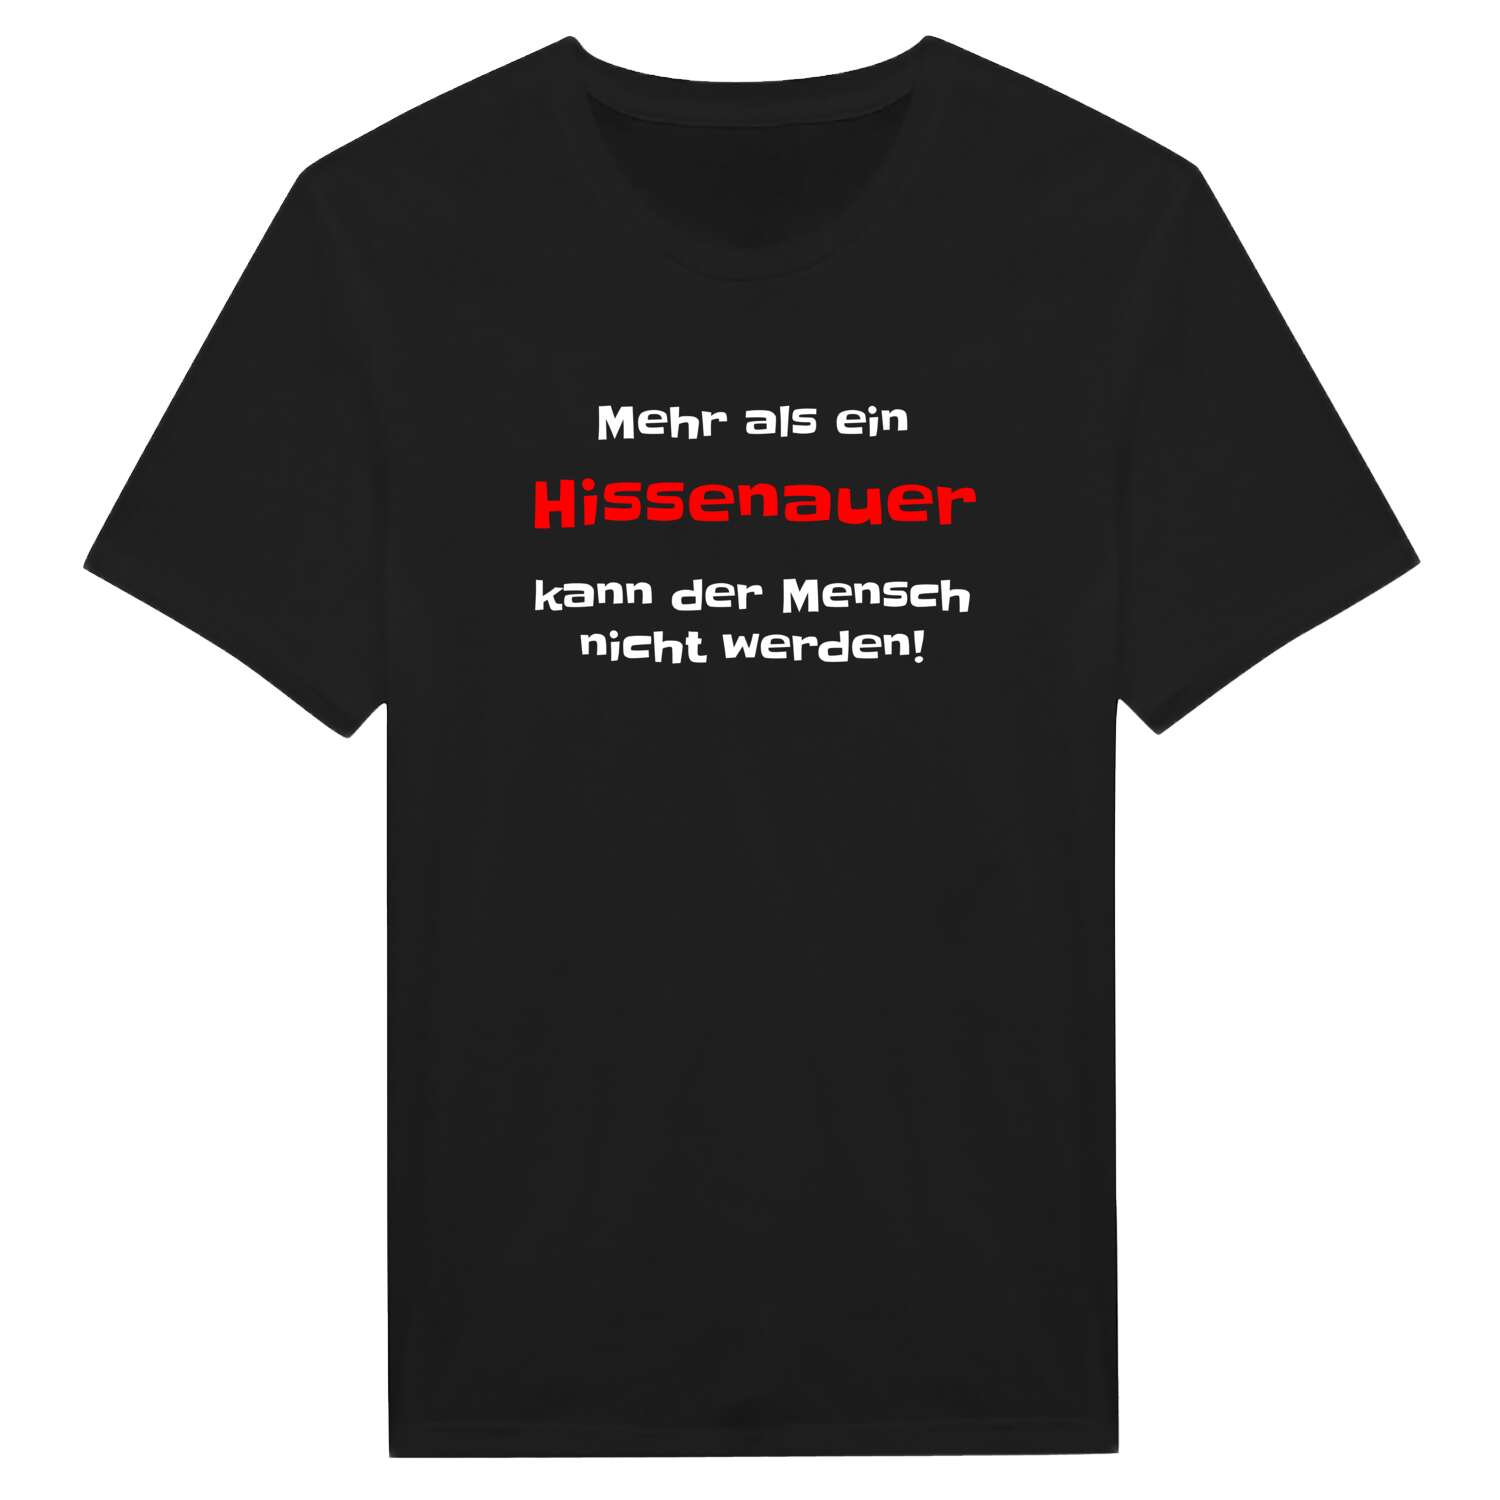 Hissenau T-Shirt »Mehr als ein«